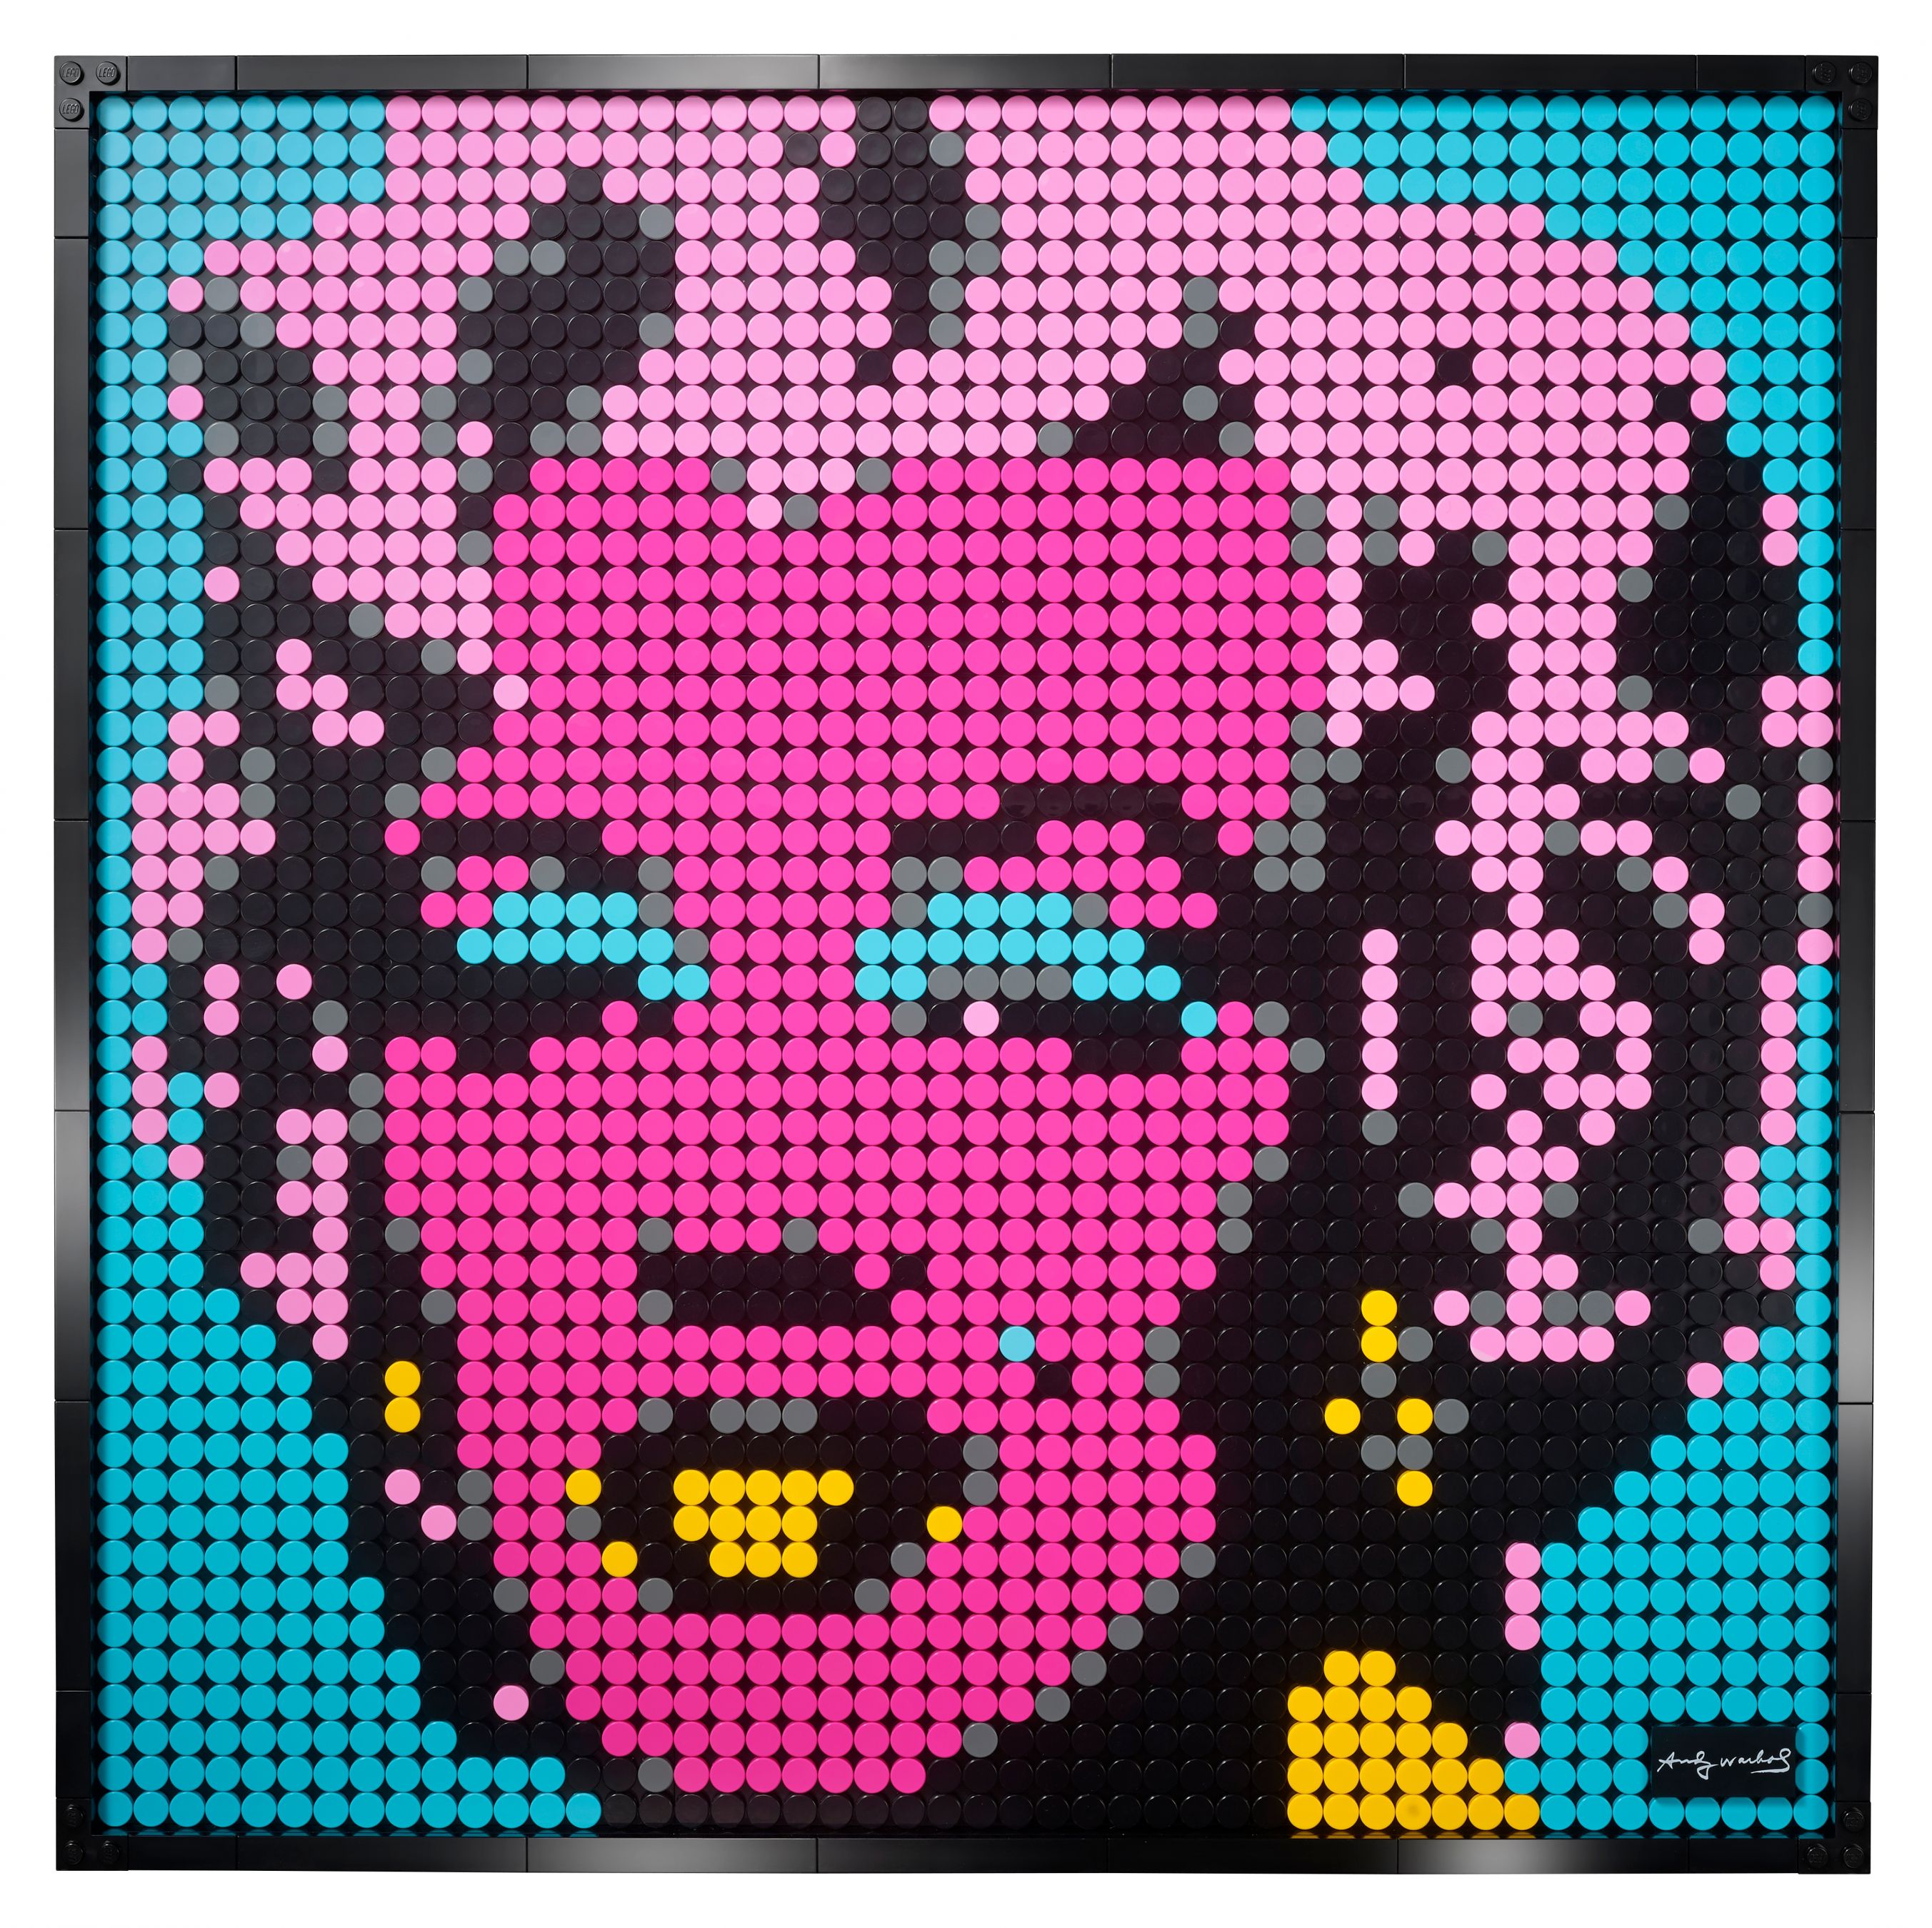 LEGO Art 31197 Andy Warhol's Marilyn Monroe LEGO_31197_alt3.jpg